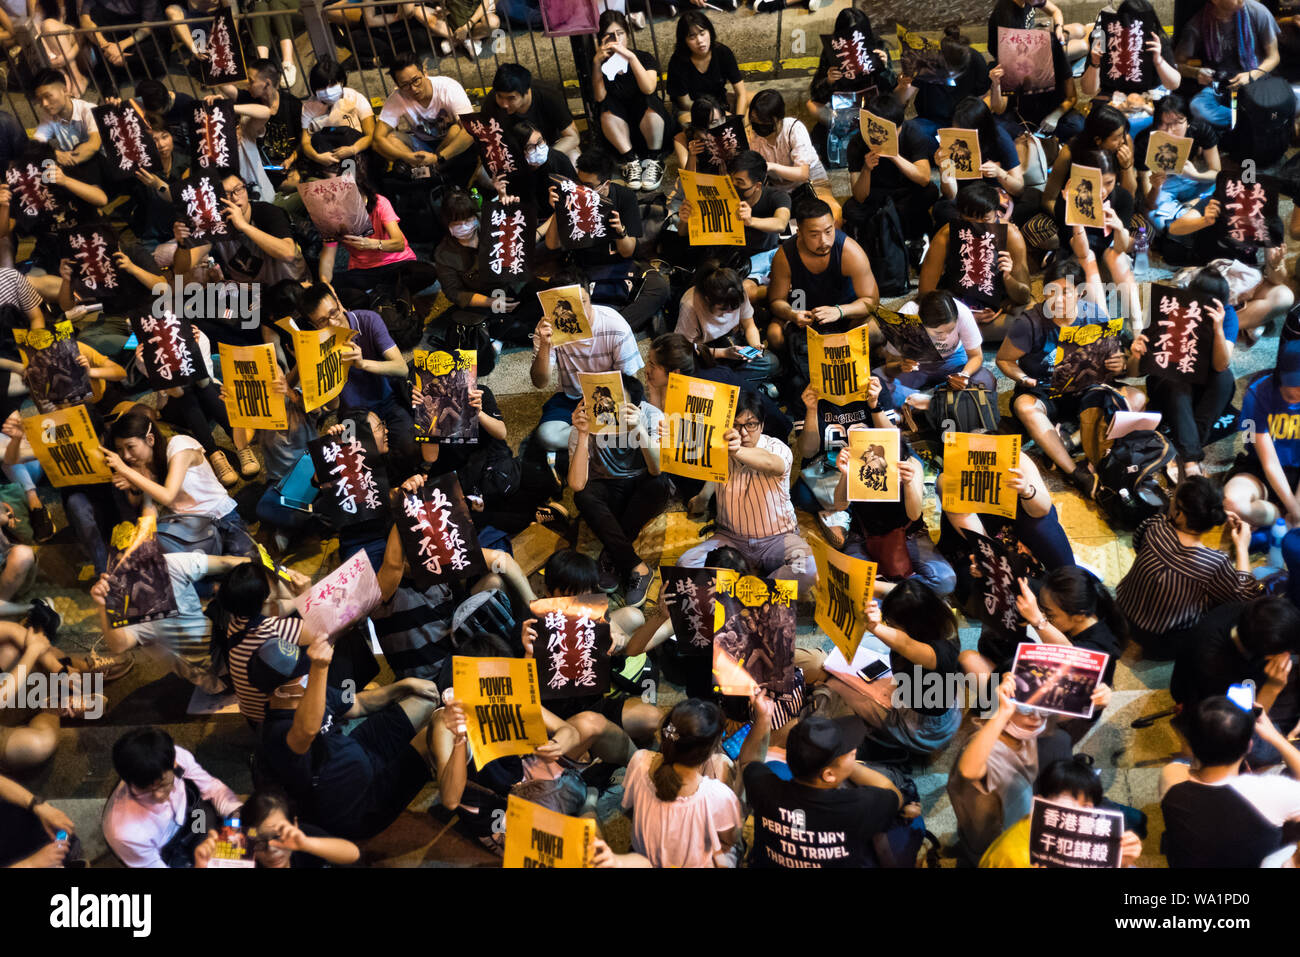 Los manifestantes sostienen varias pancartas, mientras gritaban eslóganes durante el rally.manifestantes organizaron una manifestación pacífica encaminada a aumentar el impulso de ir en la décima semana de protestas. Los organizadores del rally pronunció varios discursos y vídeos mostrados de varios miembros del Parlamento británico mostrando apoyo a Hong Kong contra los manifestantes. Las demandas hechas por los manifestantes en relación con la retirada del proyecto de ley de extradición aún tienen que ser resueltos por el gobierno. Foto de stock